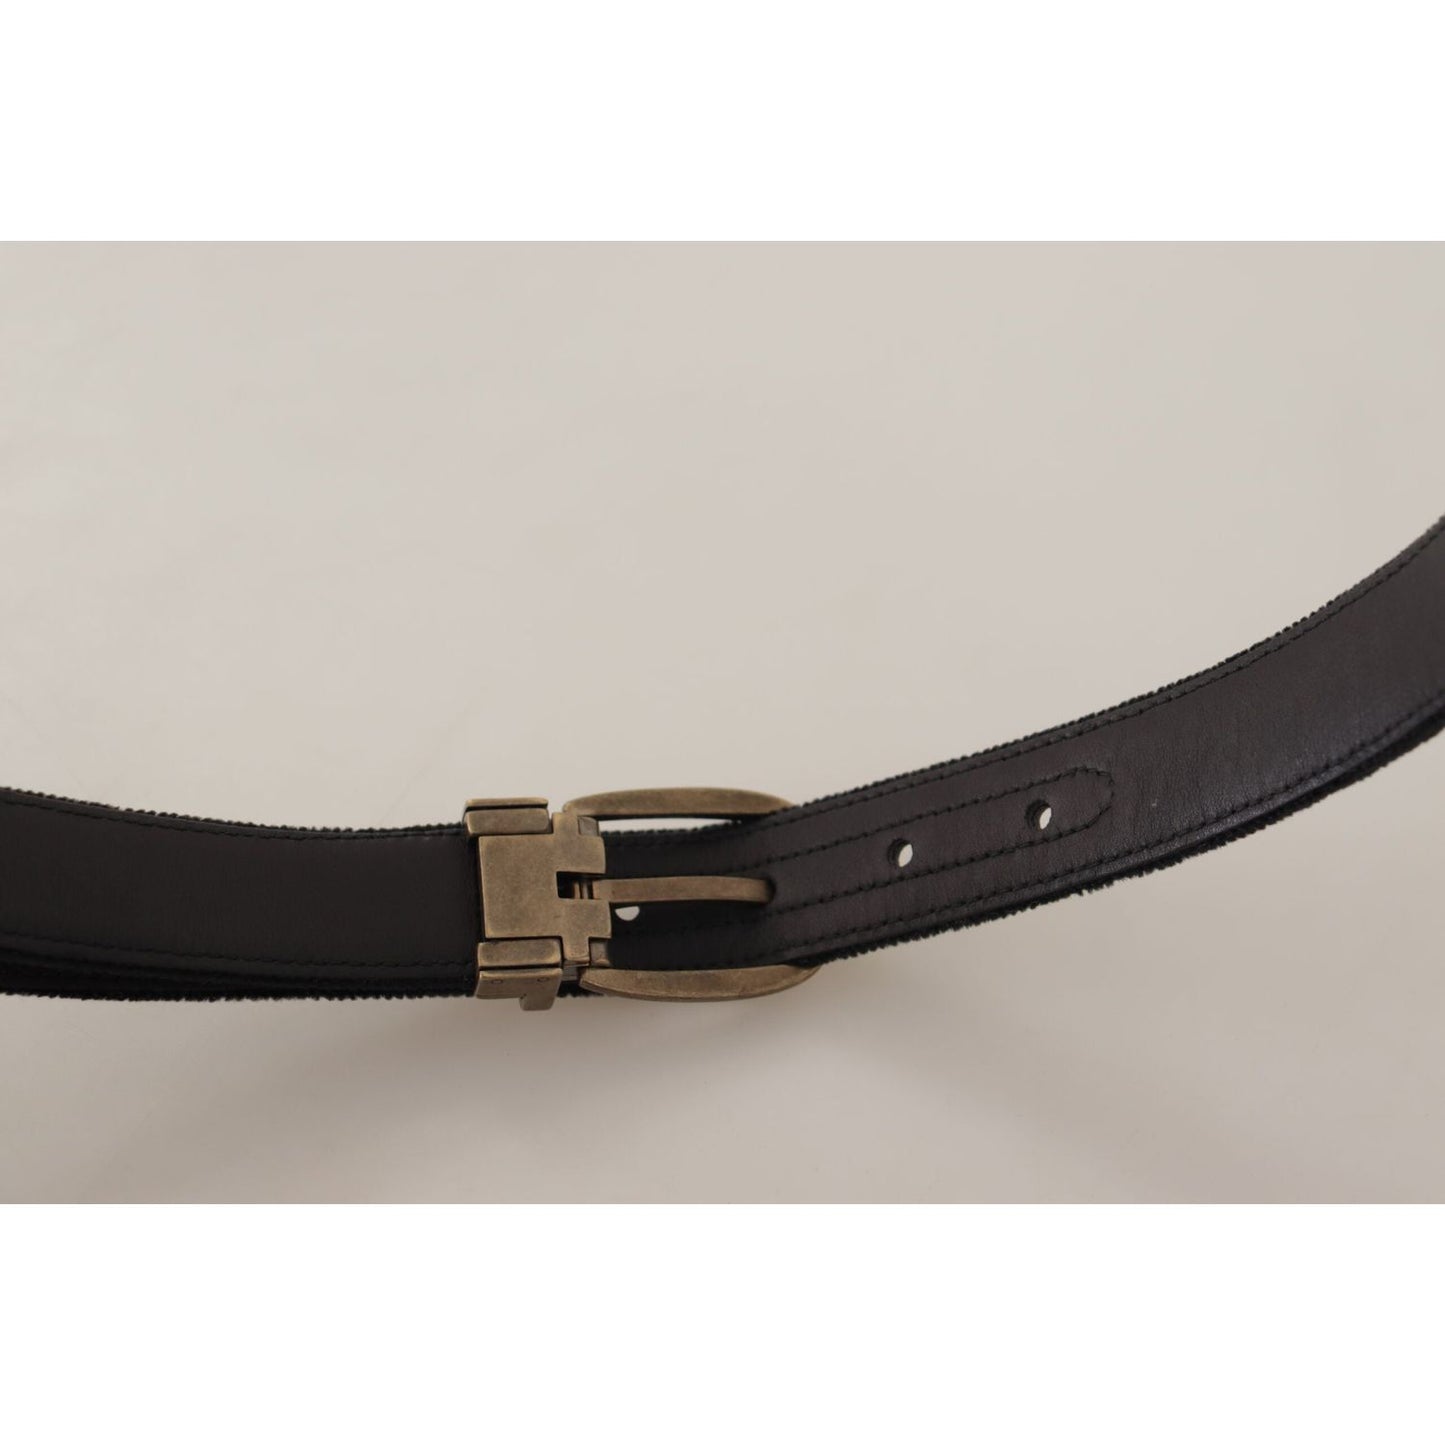 Dolce & Gabbana Elegant Black Leather Designer Belt black-alta-sartoria-velvet-gold-metal-buckle-belt IMG_0623-scaled-38630776-a96.jpg